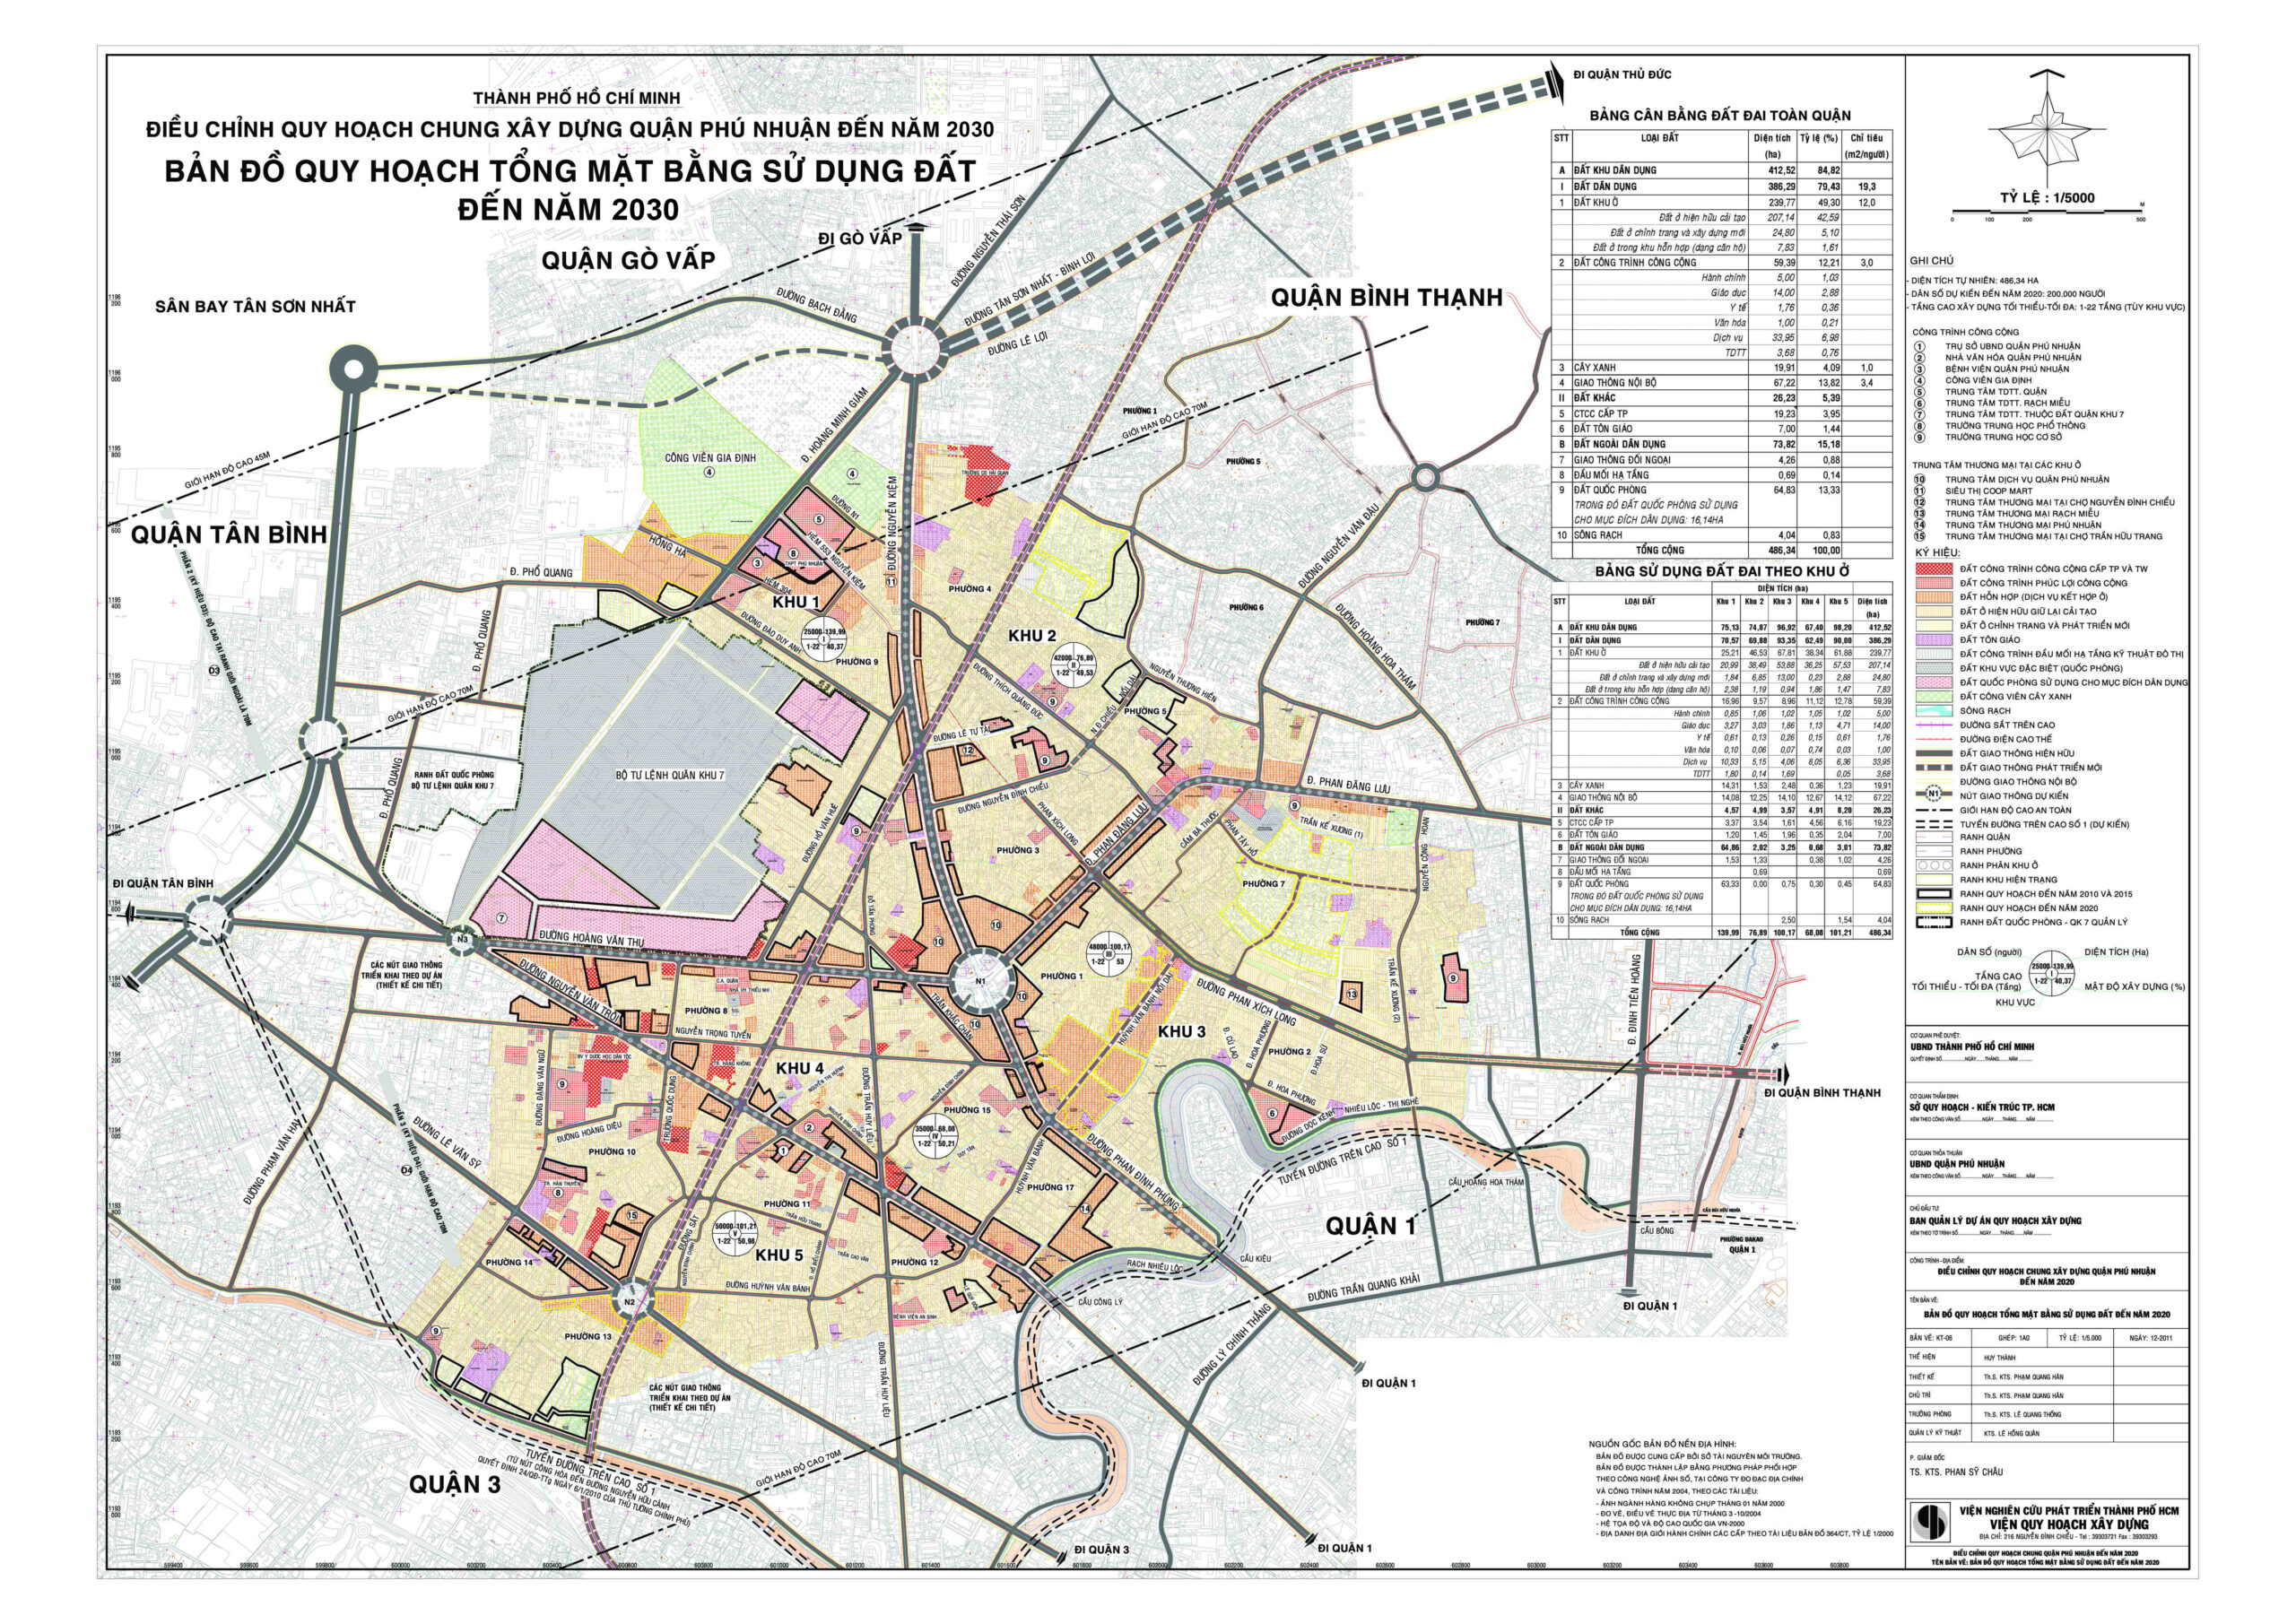 Bản đồ ranh giới của huyện Cần Giờ khổ lớn năm 2021